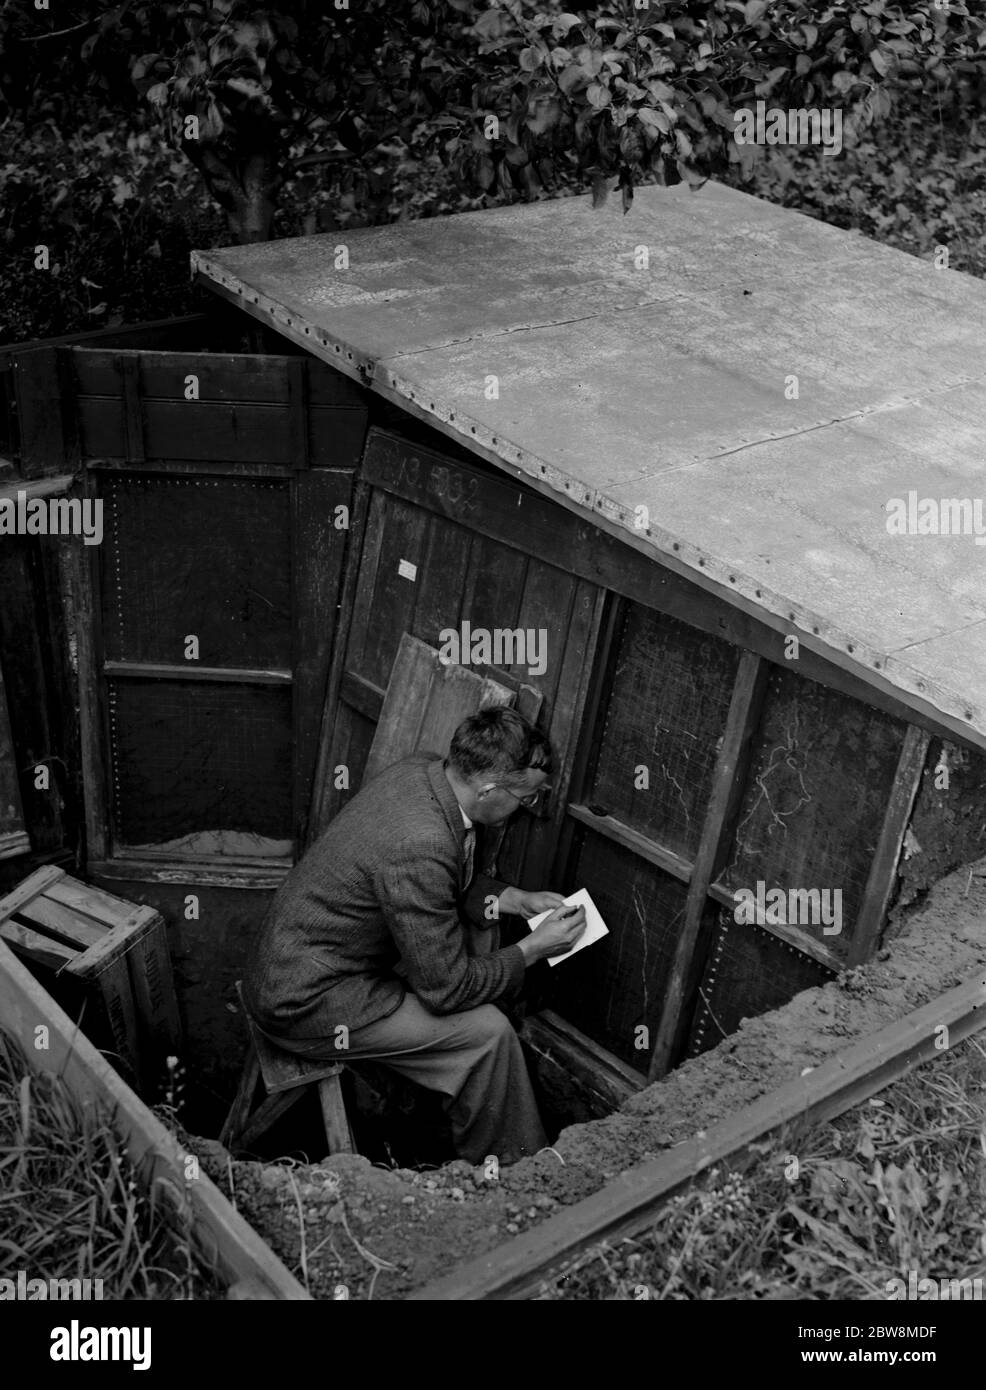 Un homme prend des lectures à la Root Growth Chamber de la station de recherche East Malling, le 6 octobre 1937 Banque D'Images